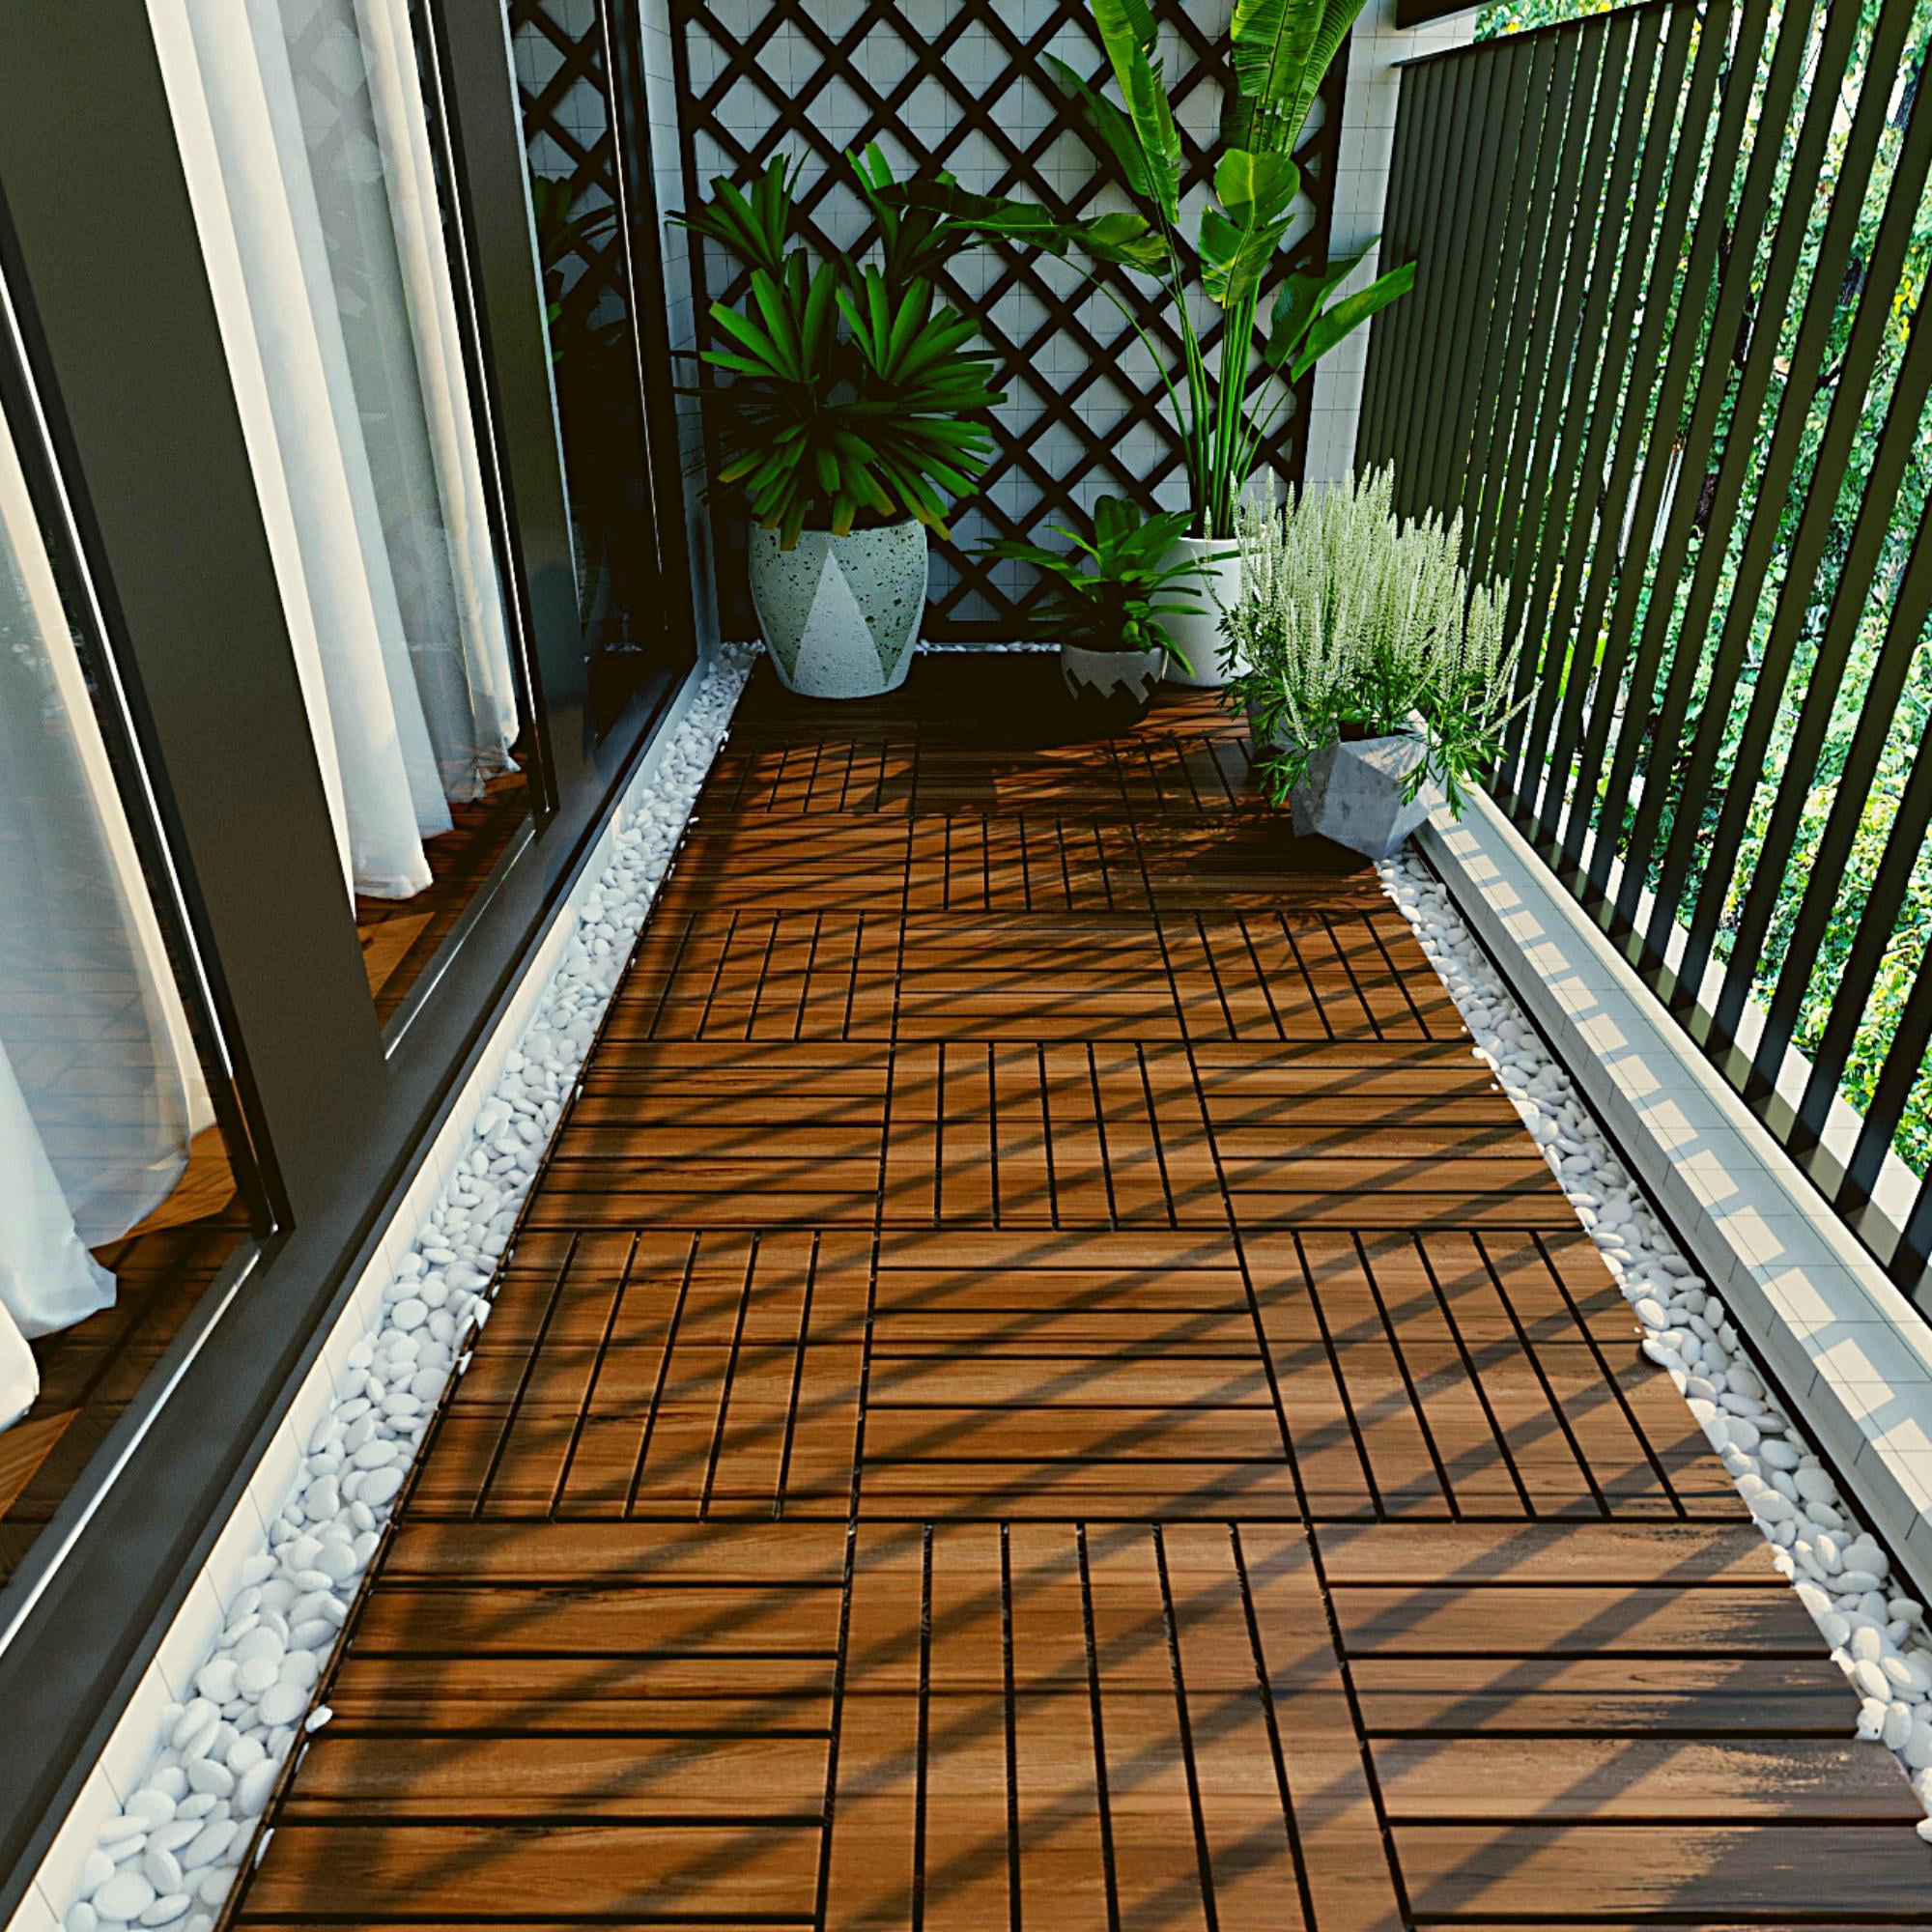 Outdoor Interlocking Patio Tiles 10 Pack, iRerts Waterproof Wood 12